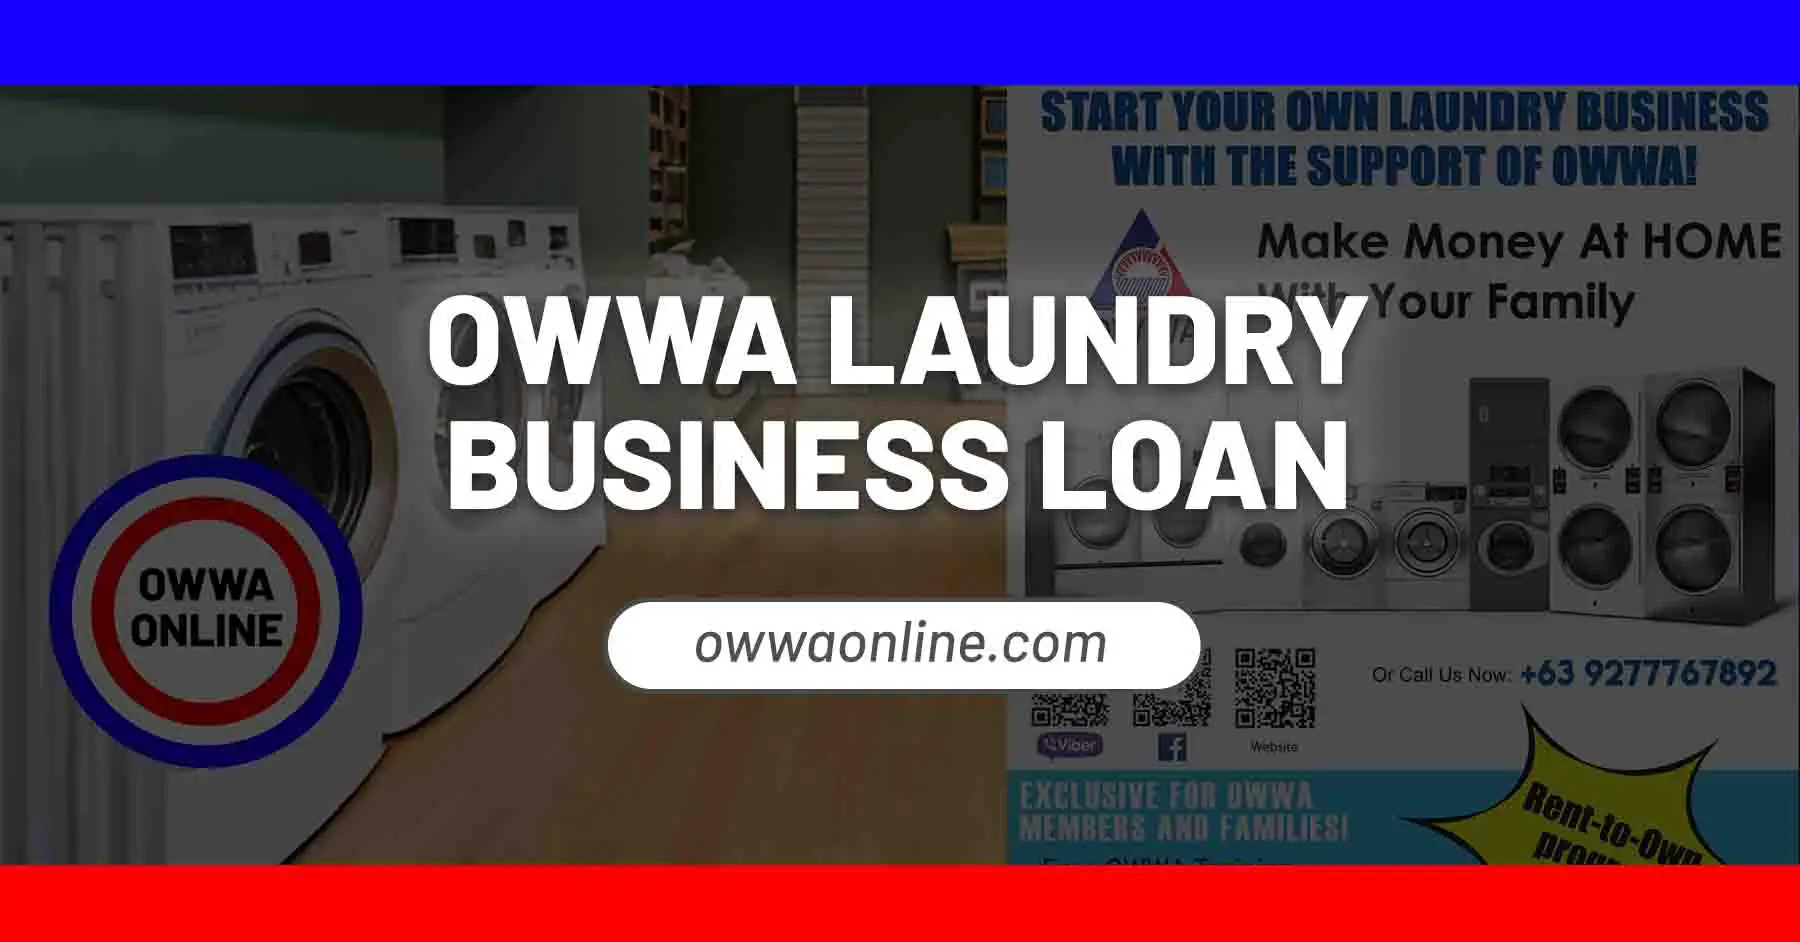 owwa laundry business loan package program